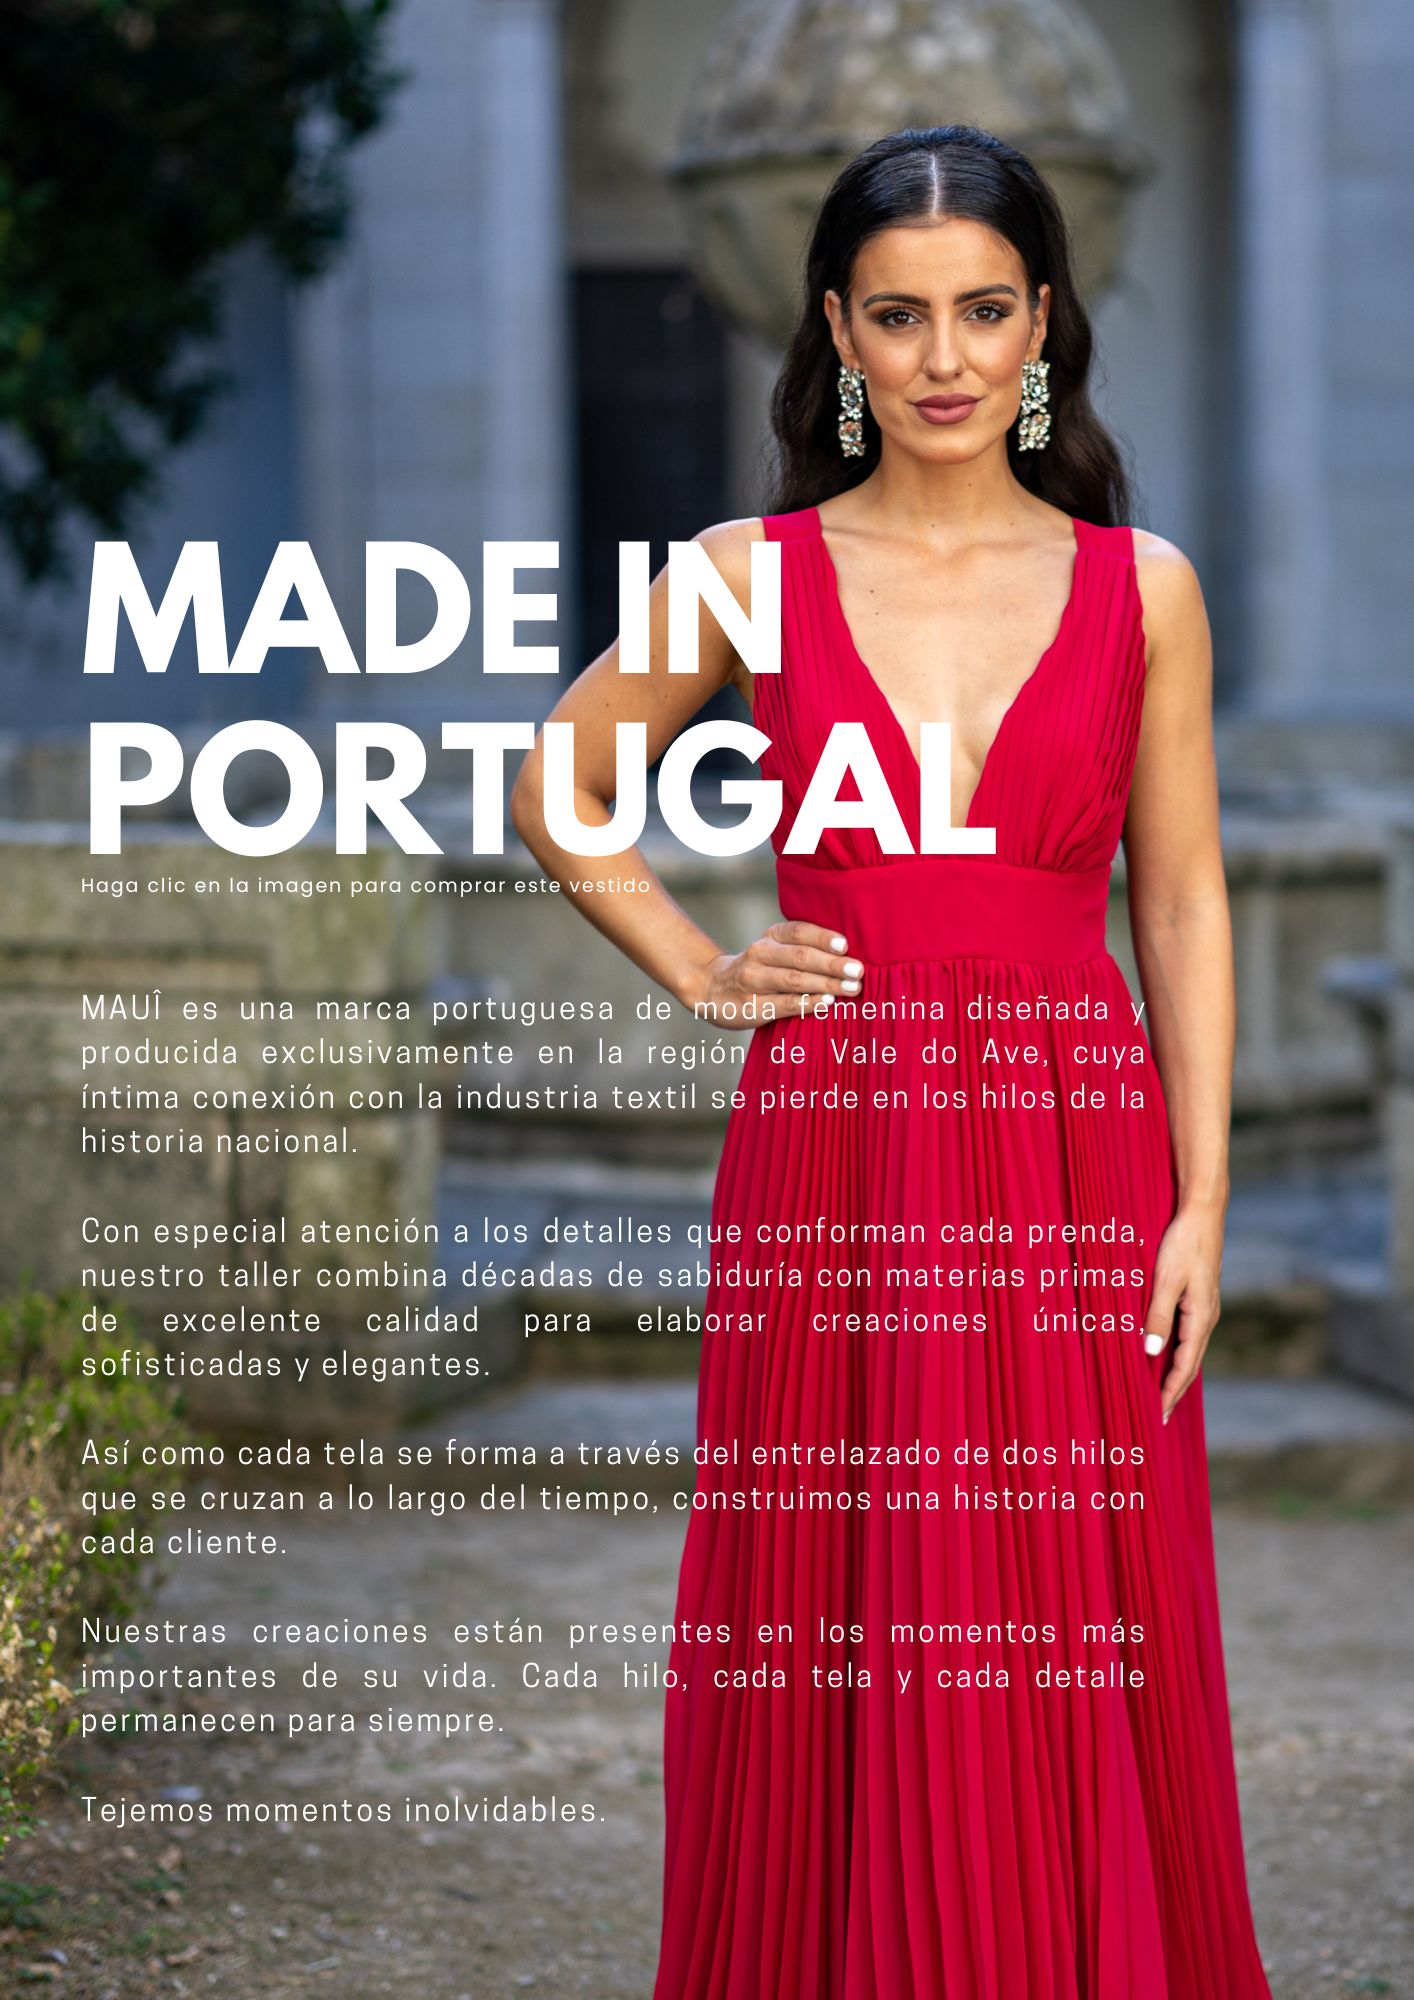 MAUI, vestidos de fiesta, marca 100% portuguesa, hechos a mano, alta calidad, colores personalizados, envío rápido, moda mujer, sostenible